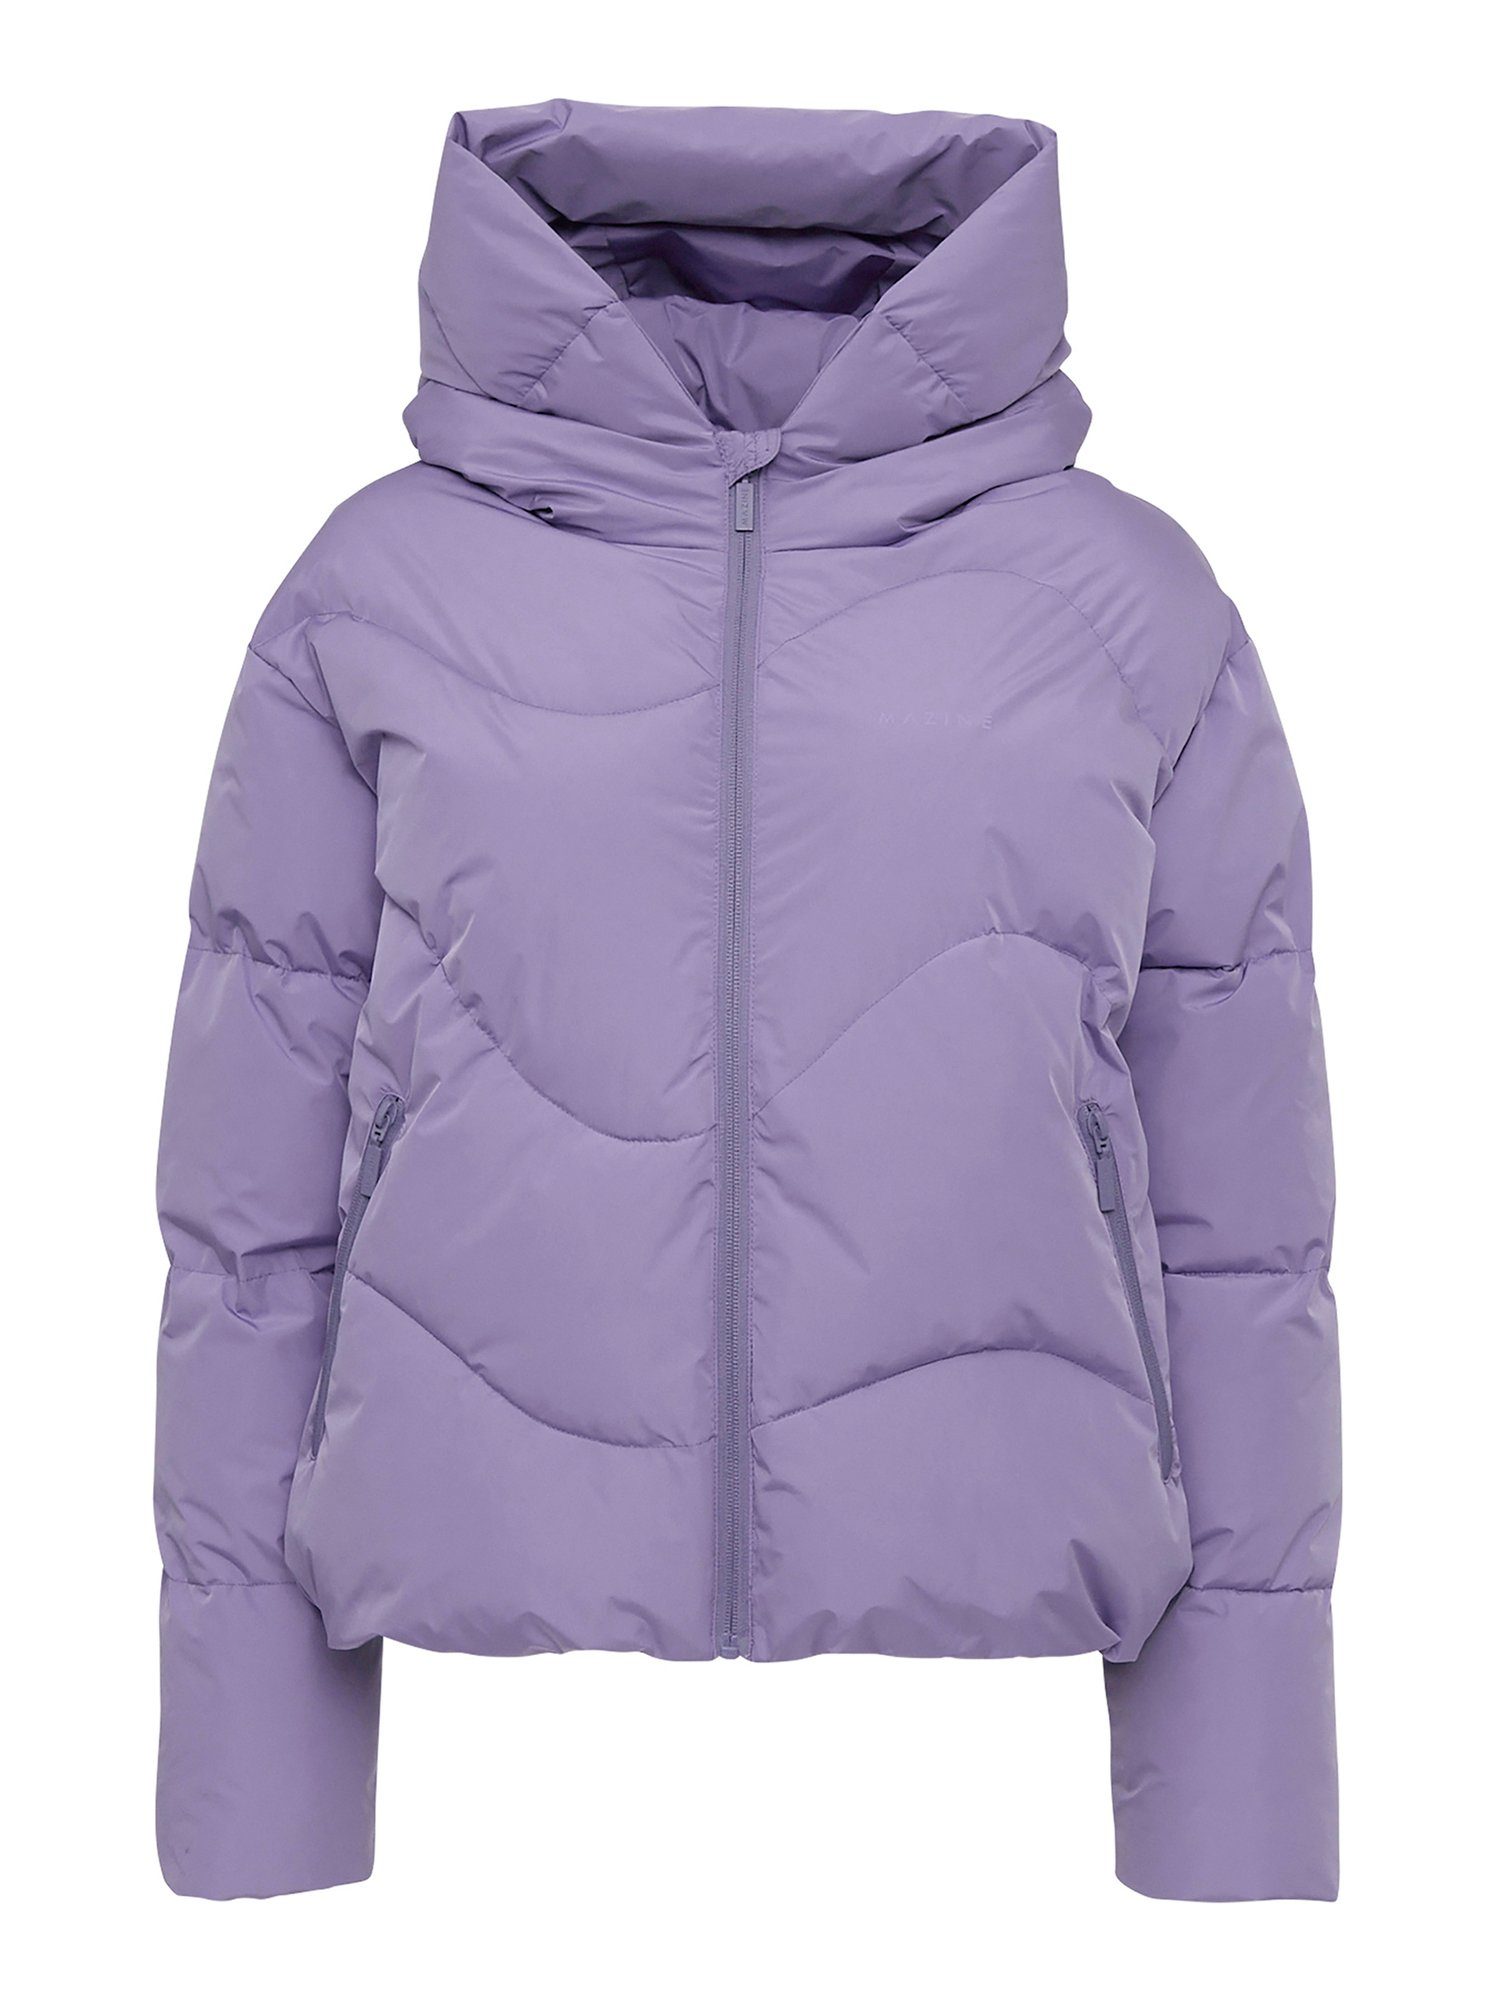 Winterjacke gefüttert Jacket warm MAZINE haze Dana purple Puffer